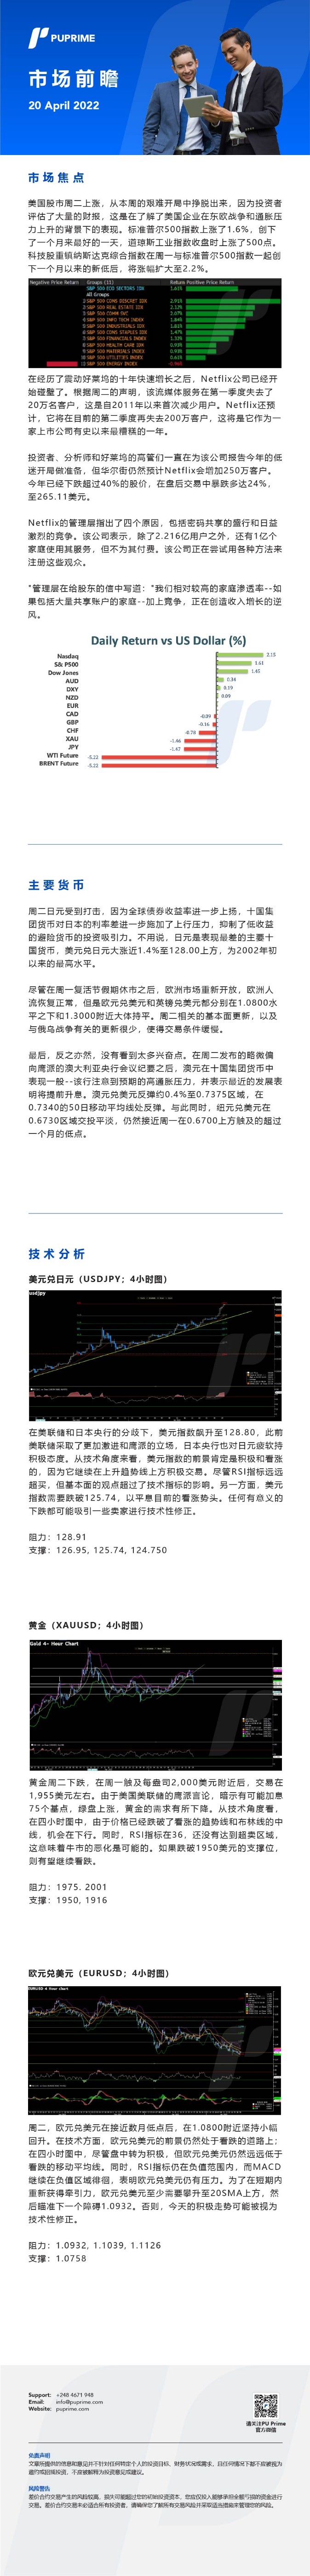 20042022 Daily Market Analysis__CHN.jpg